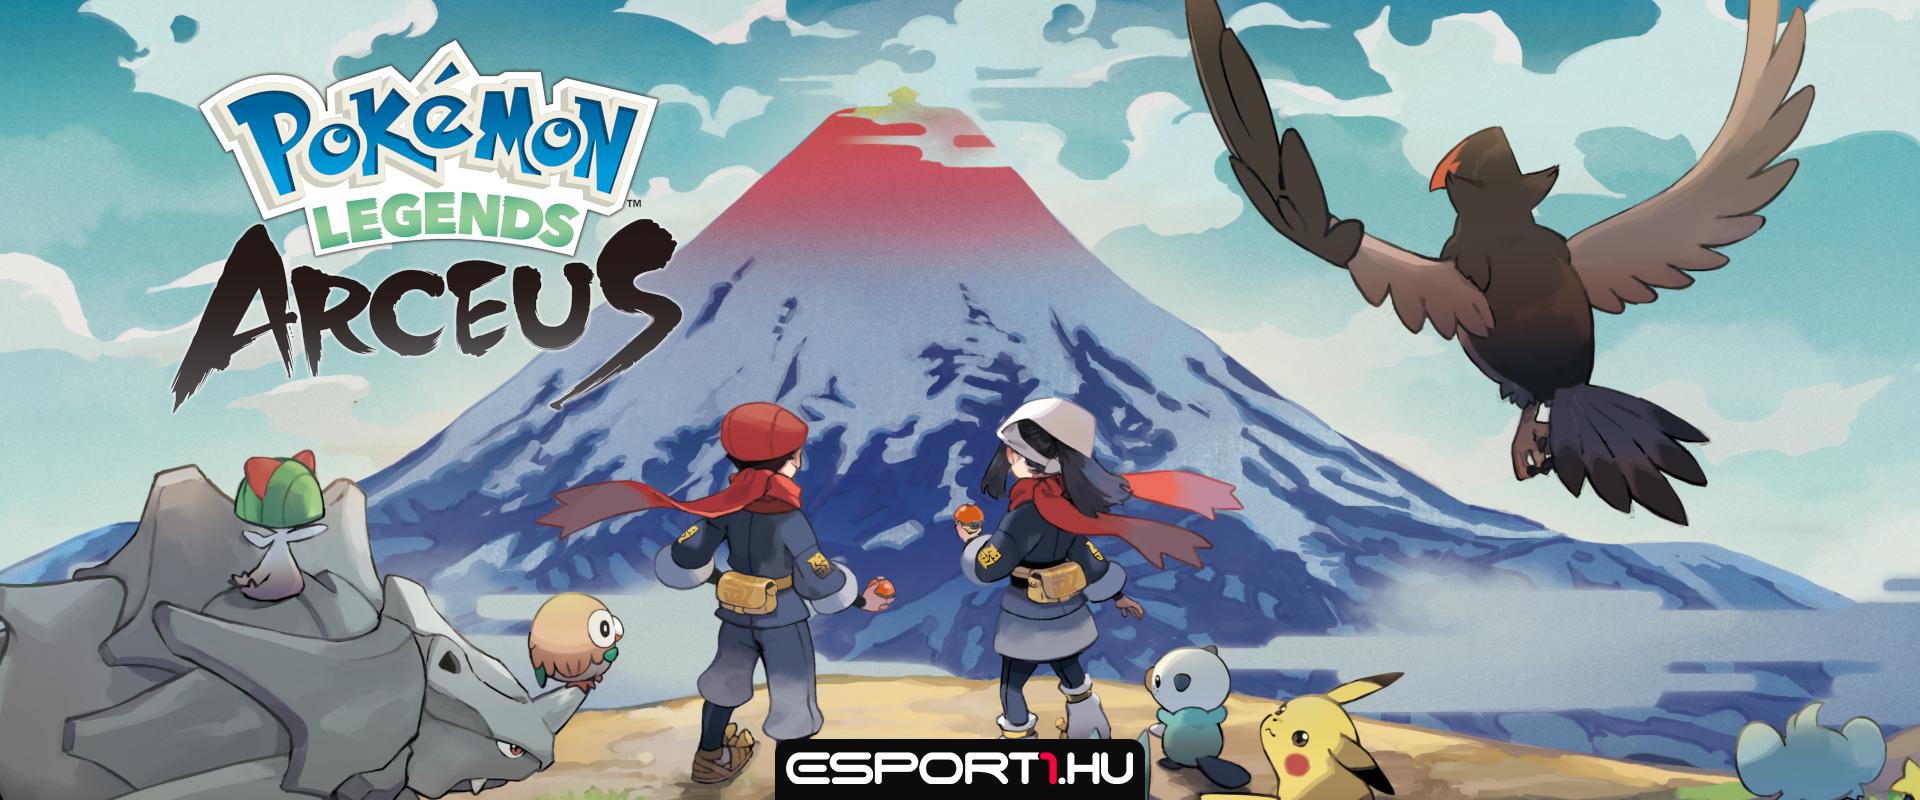 Pokémon Legends: Arceus – Tud még újat mutatni egy Pokémon játék?